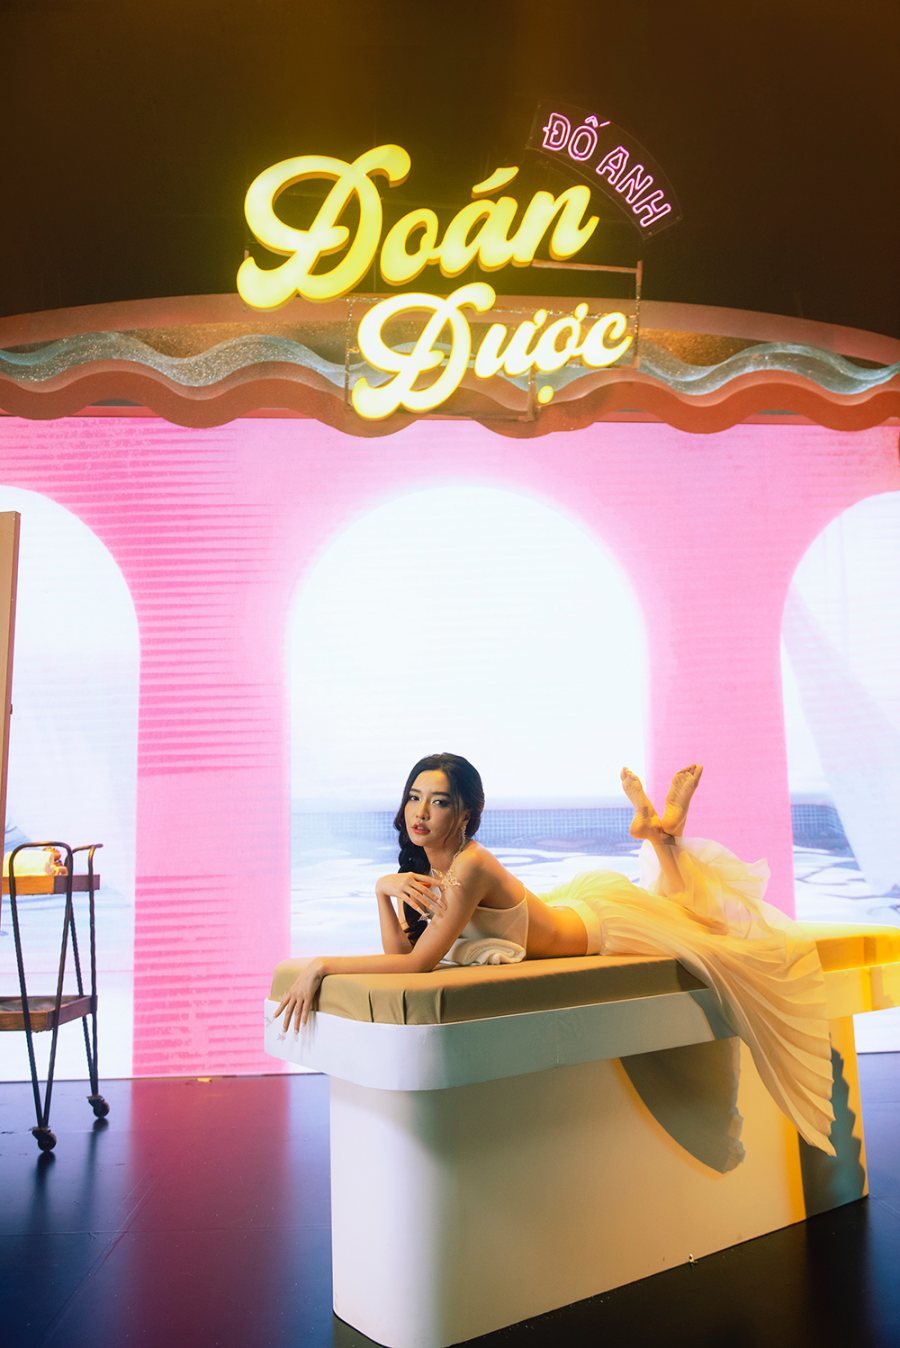  
Nữ ca sĩ khoe nhan sắc quyến rũ trong MV.